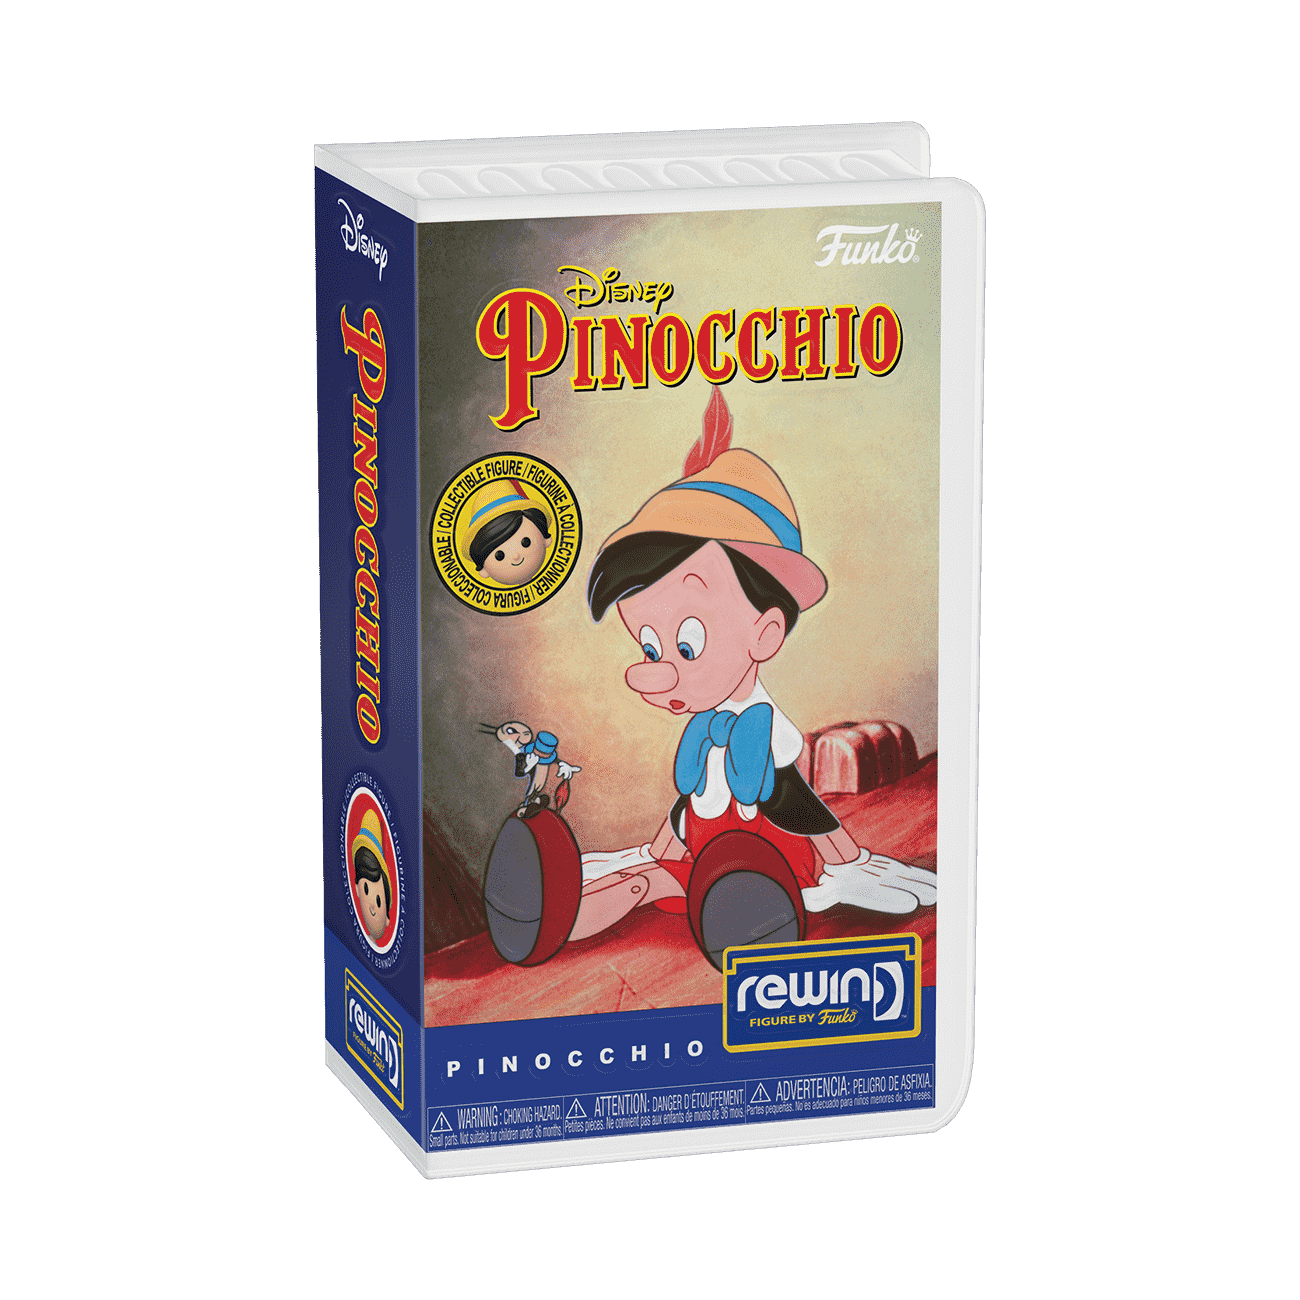 Buy REWIND at Pinocchio